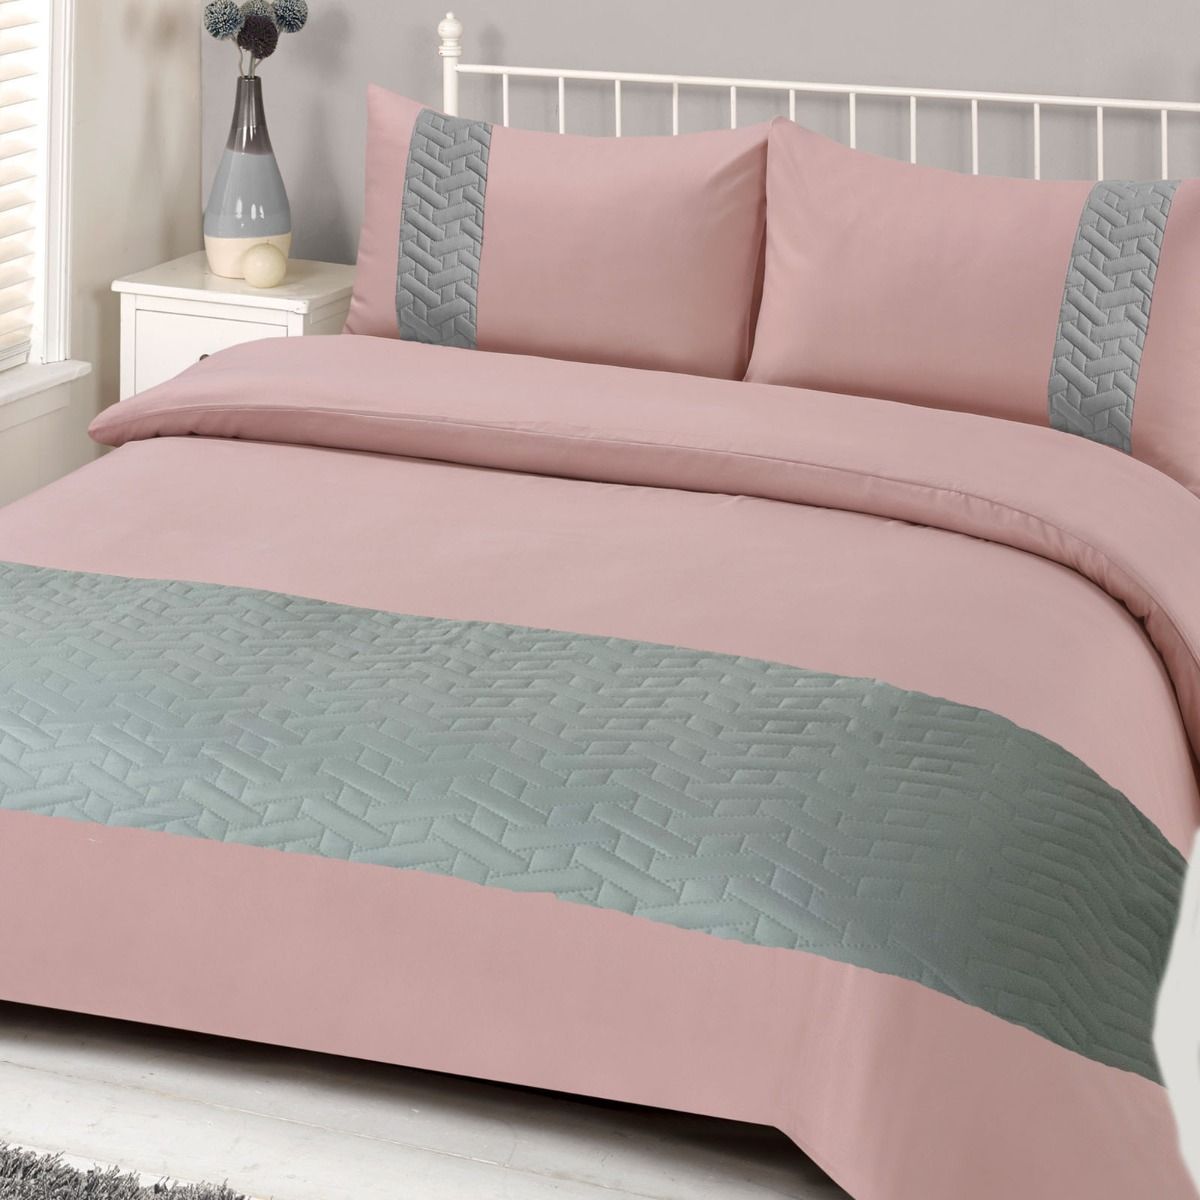 Brentfords Pinsonic Duvet Cover Bedding Set, Blush Pink - Super King